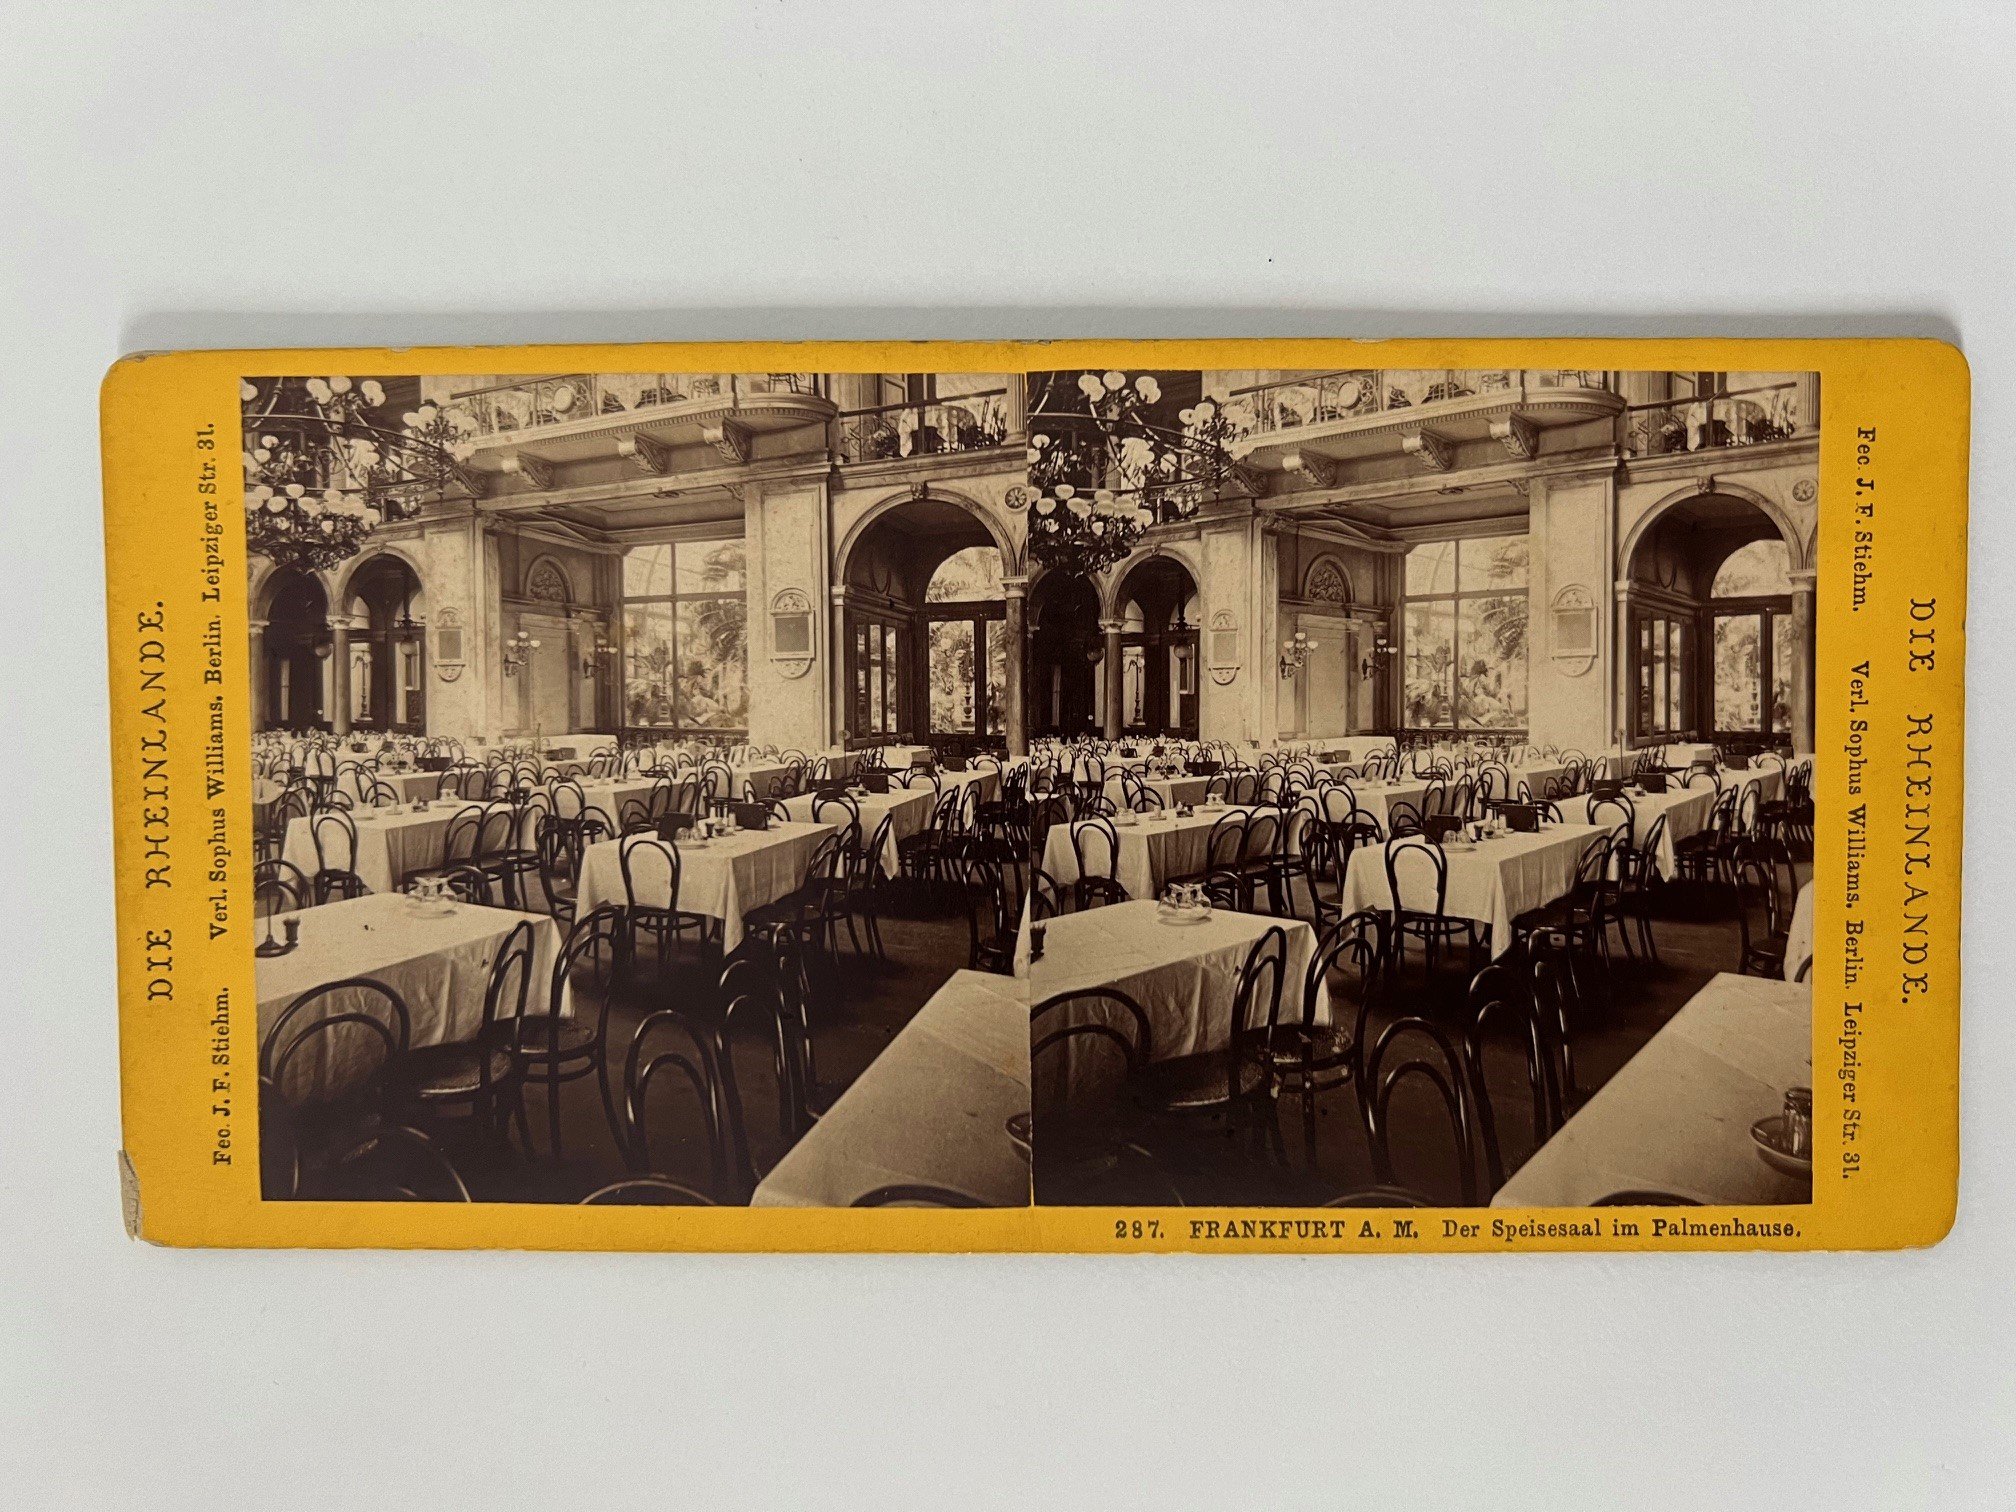 Stereobild, Johann Friedrich Stiehm, Frankfurt, Nr. 287, Der Speisesaal im Palmenhaus, ca. 1882. (Taunus-Rhein-Main - Regionalgeschichtliche Sammlung Dr. Stefan Naas CC BY-NC-SA)